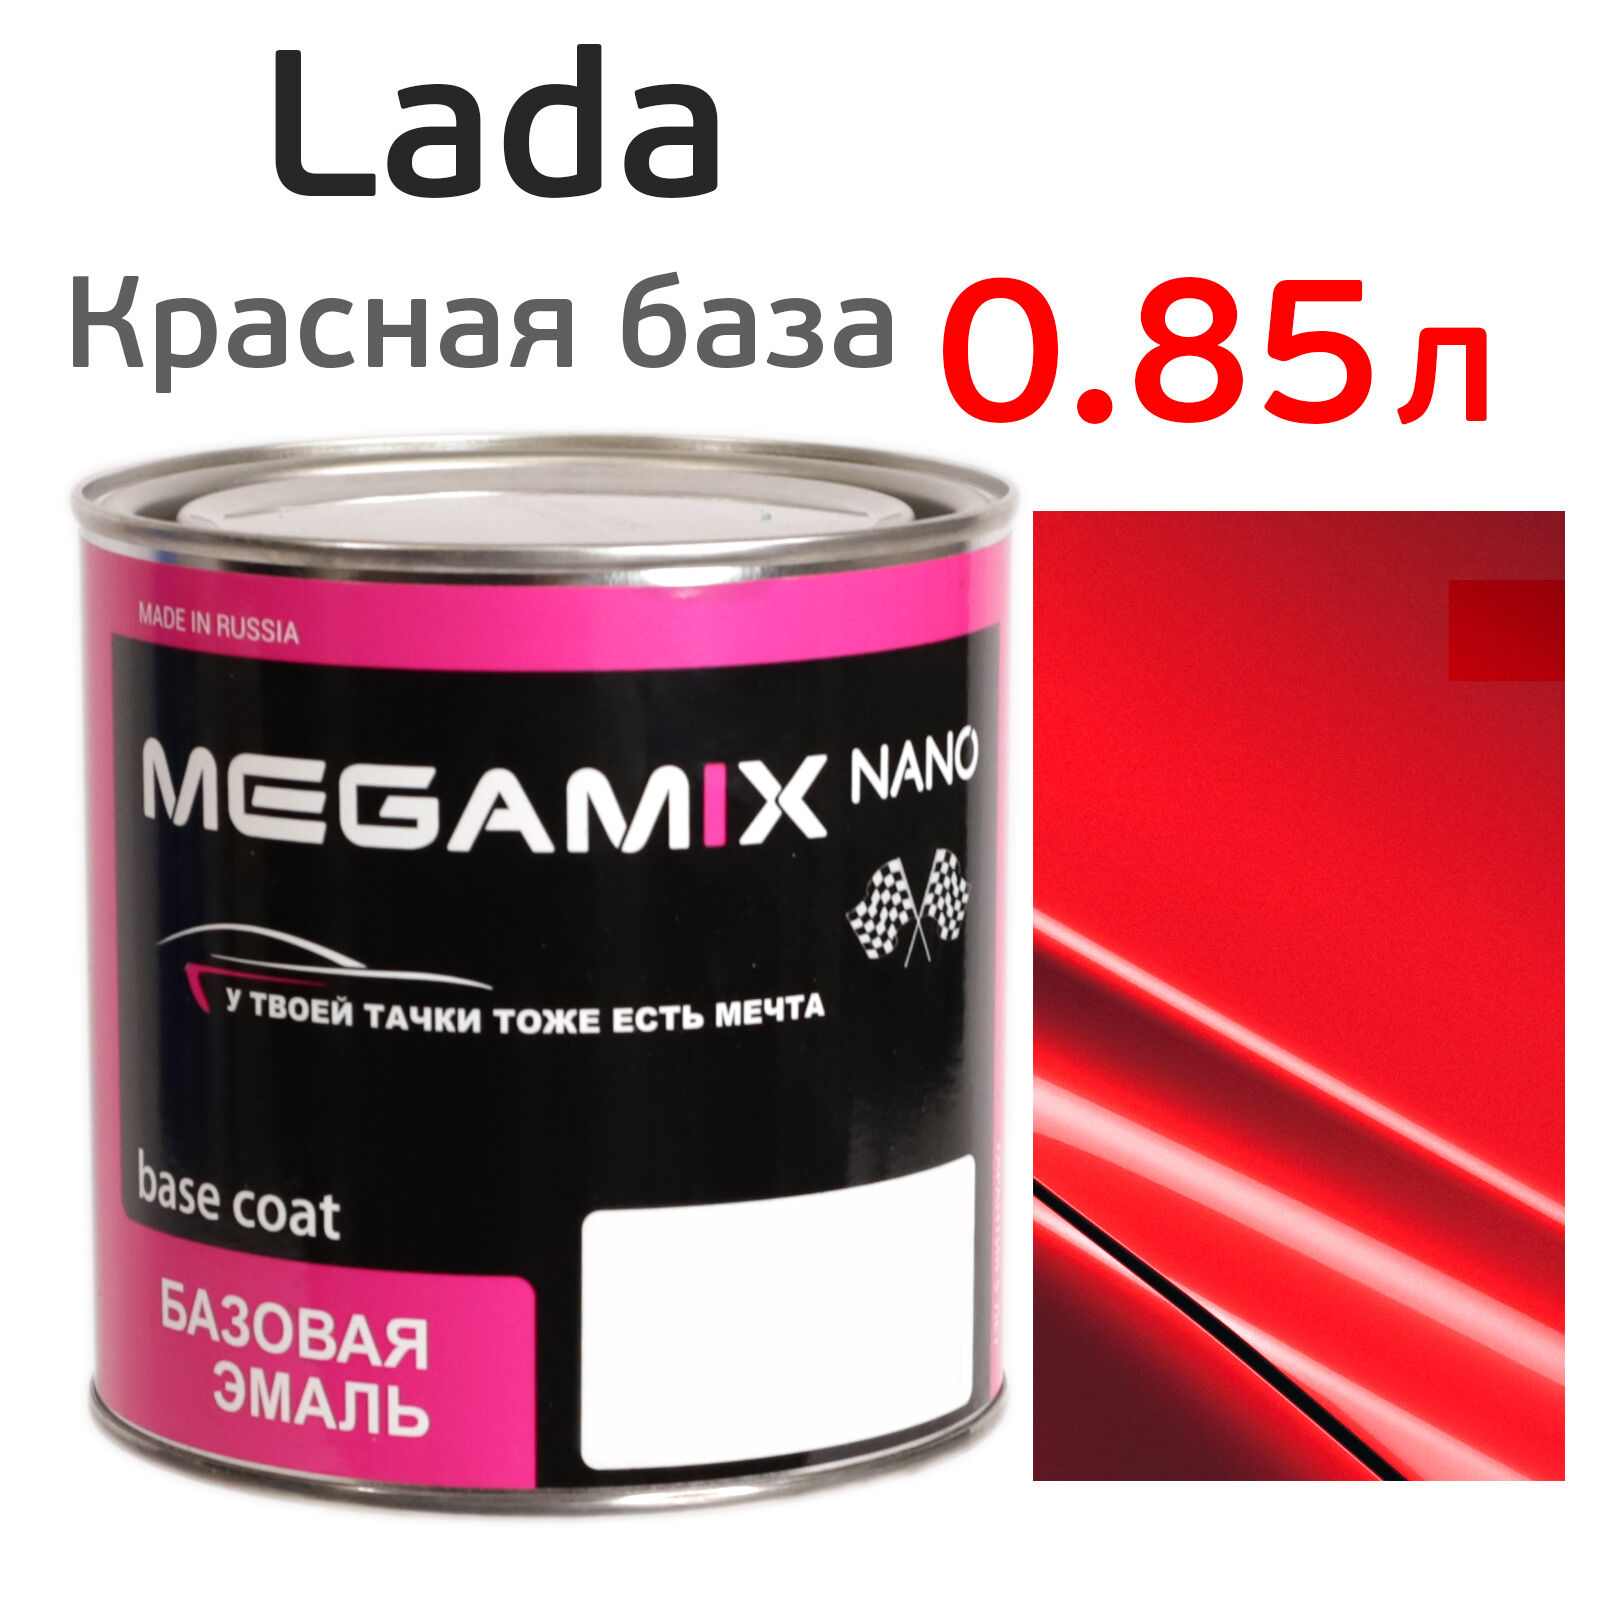 Автоэмаль MegaMIX (0.85л) Lada Красная база, базисная неэффектная эмаль под лак